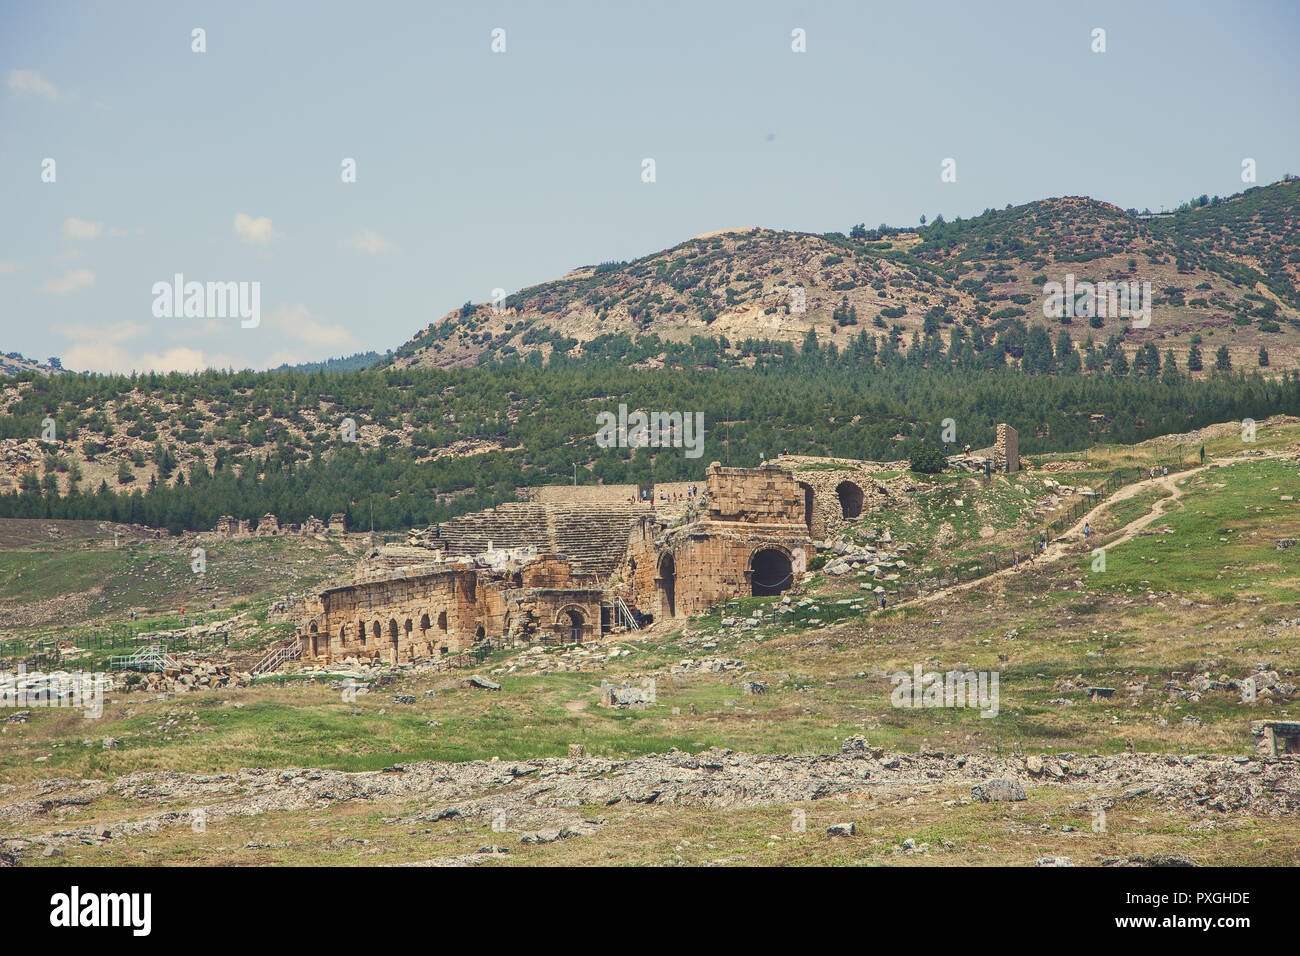 Ville antique de Hiérapolis, Pamukkale, Turquie. Le fascinant et beau beauté des sites historiques est ici. Hiérapolis de Phrygie, Denizli, T Banque D'Images